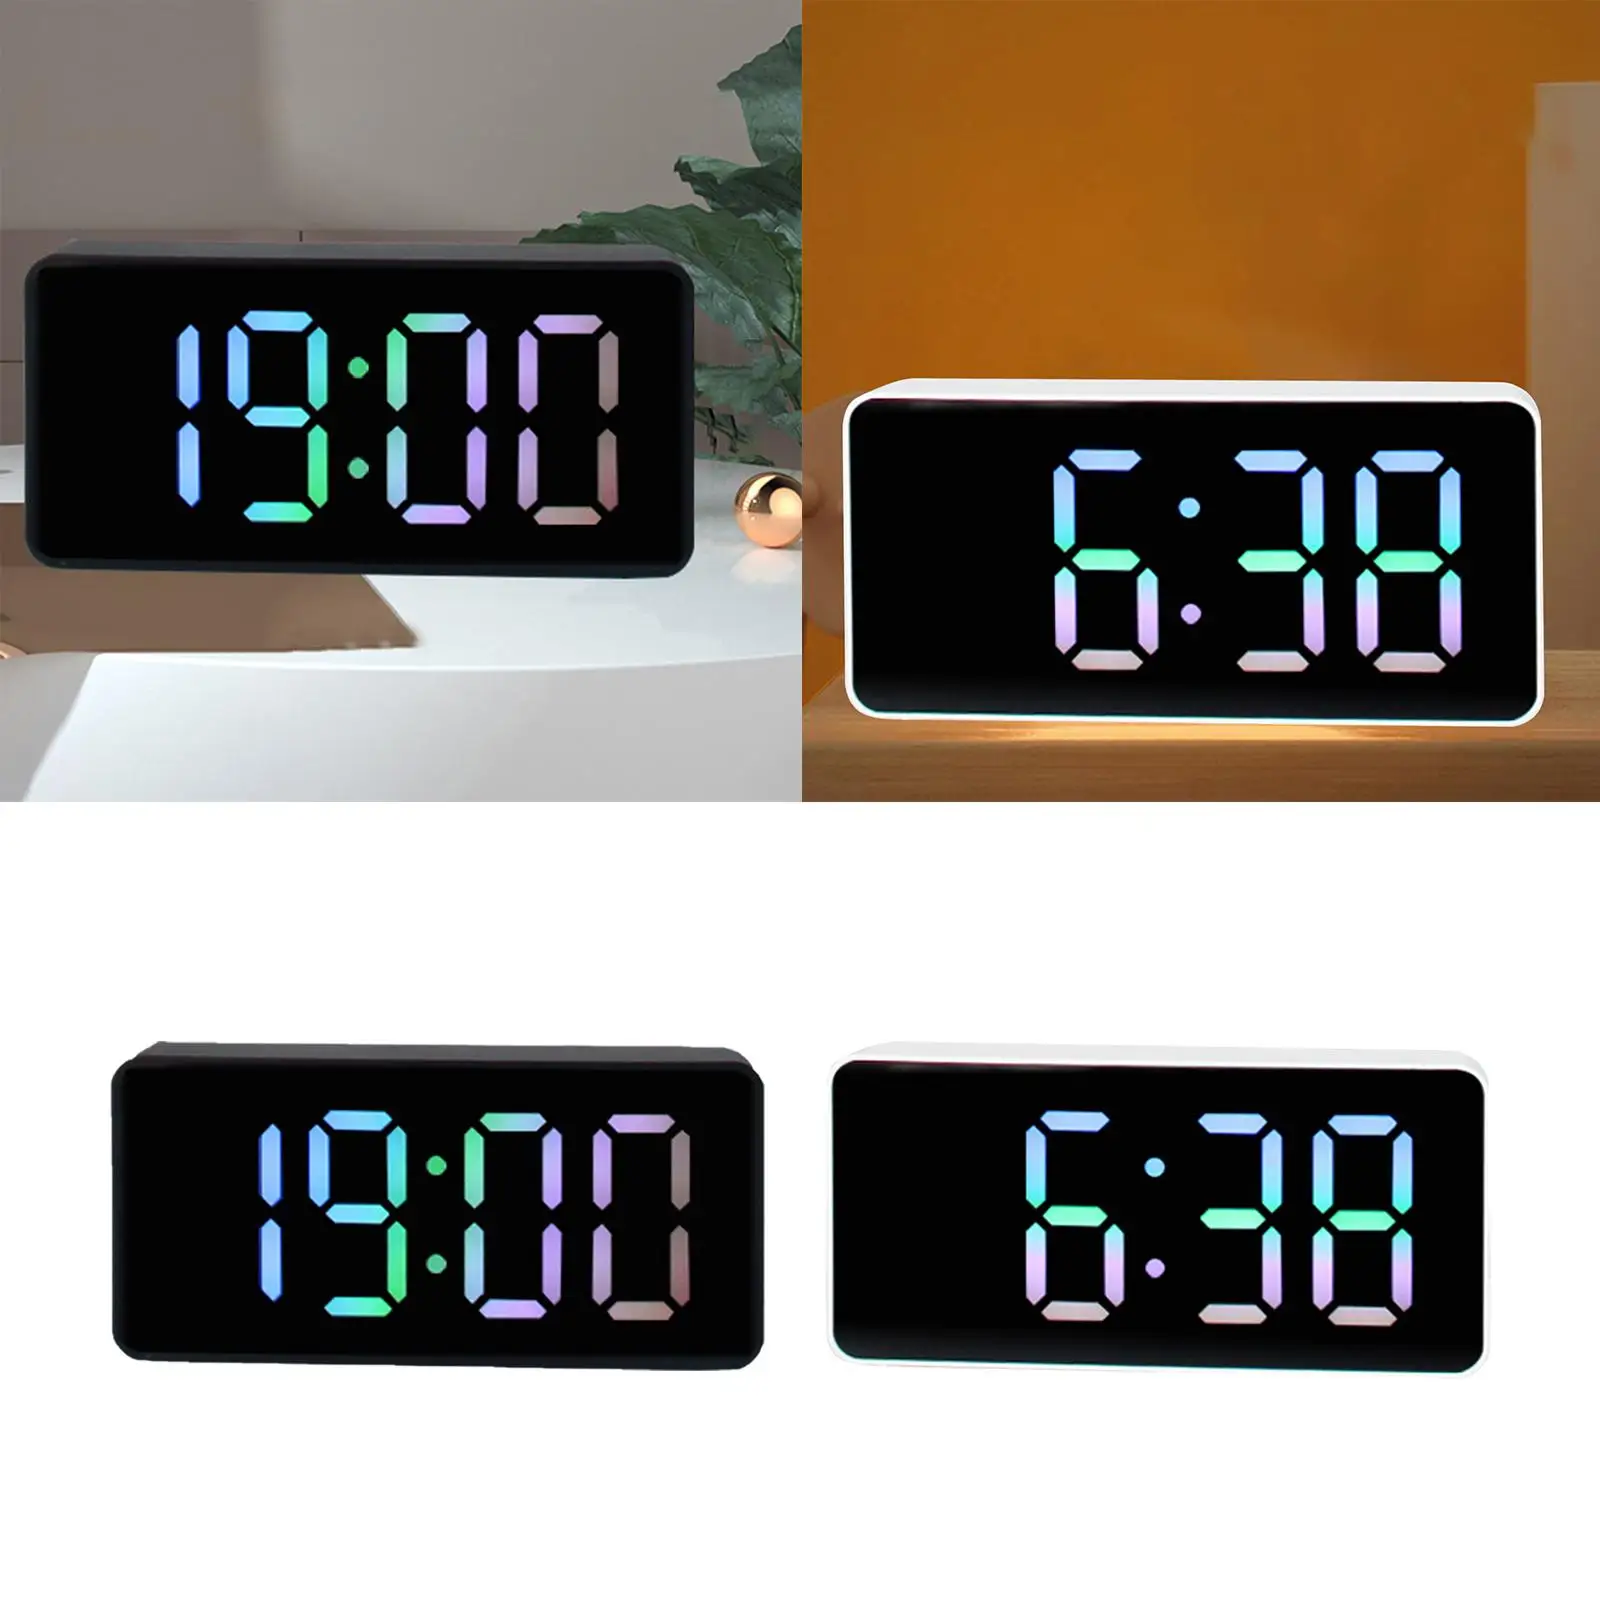 2Pcs Modern Digital alarms Clocks LED Electronic Clock for Home Bedside